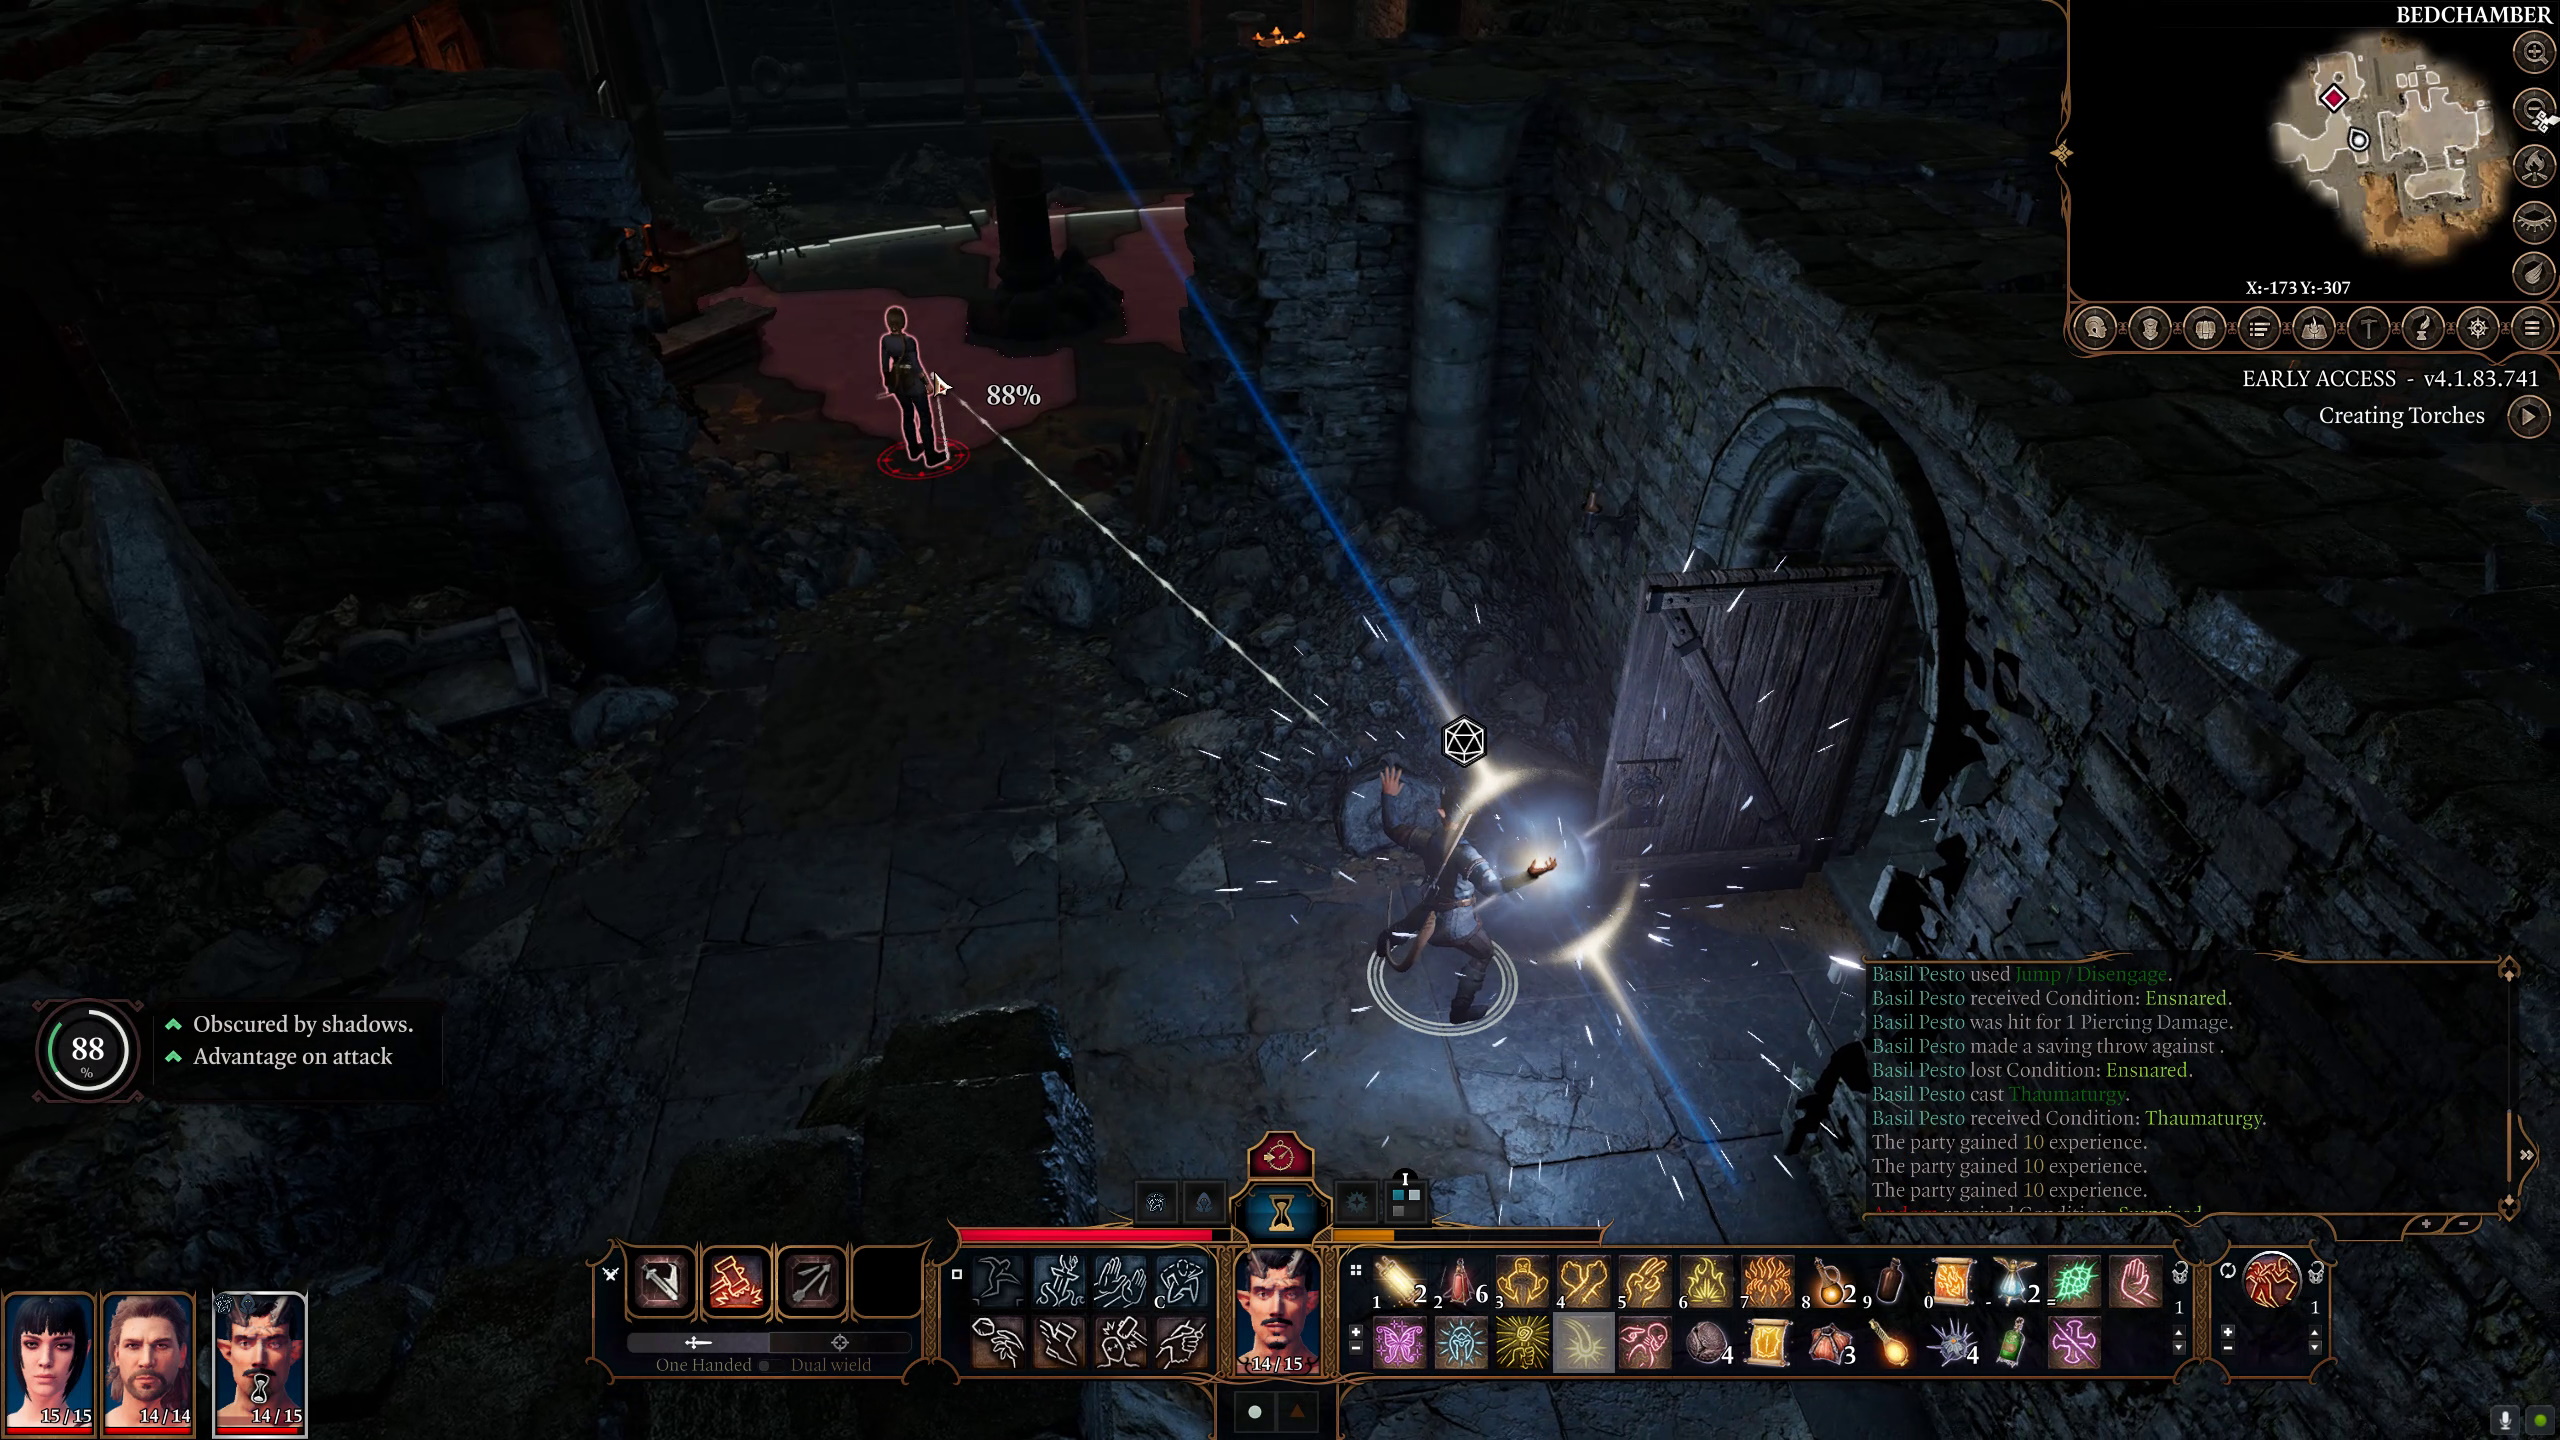 Una captura de pantalla de Baldur's Gate 3 que muestra a un personaje en una mazmorra de piedra subterránea, lanzando un hechizo mientras se infiltra en un guardia desprevenido.